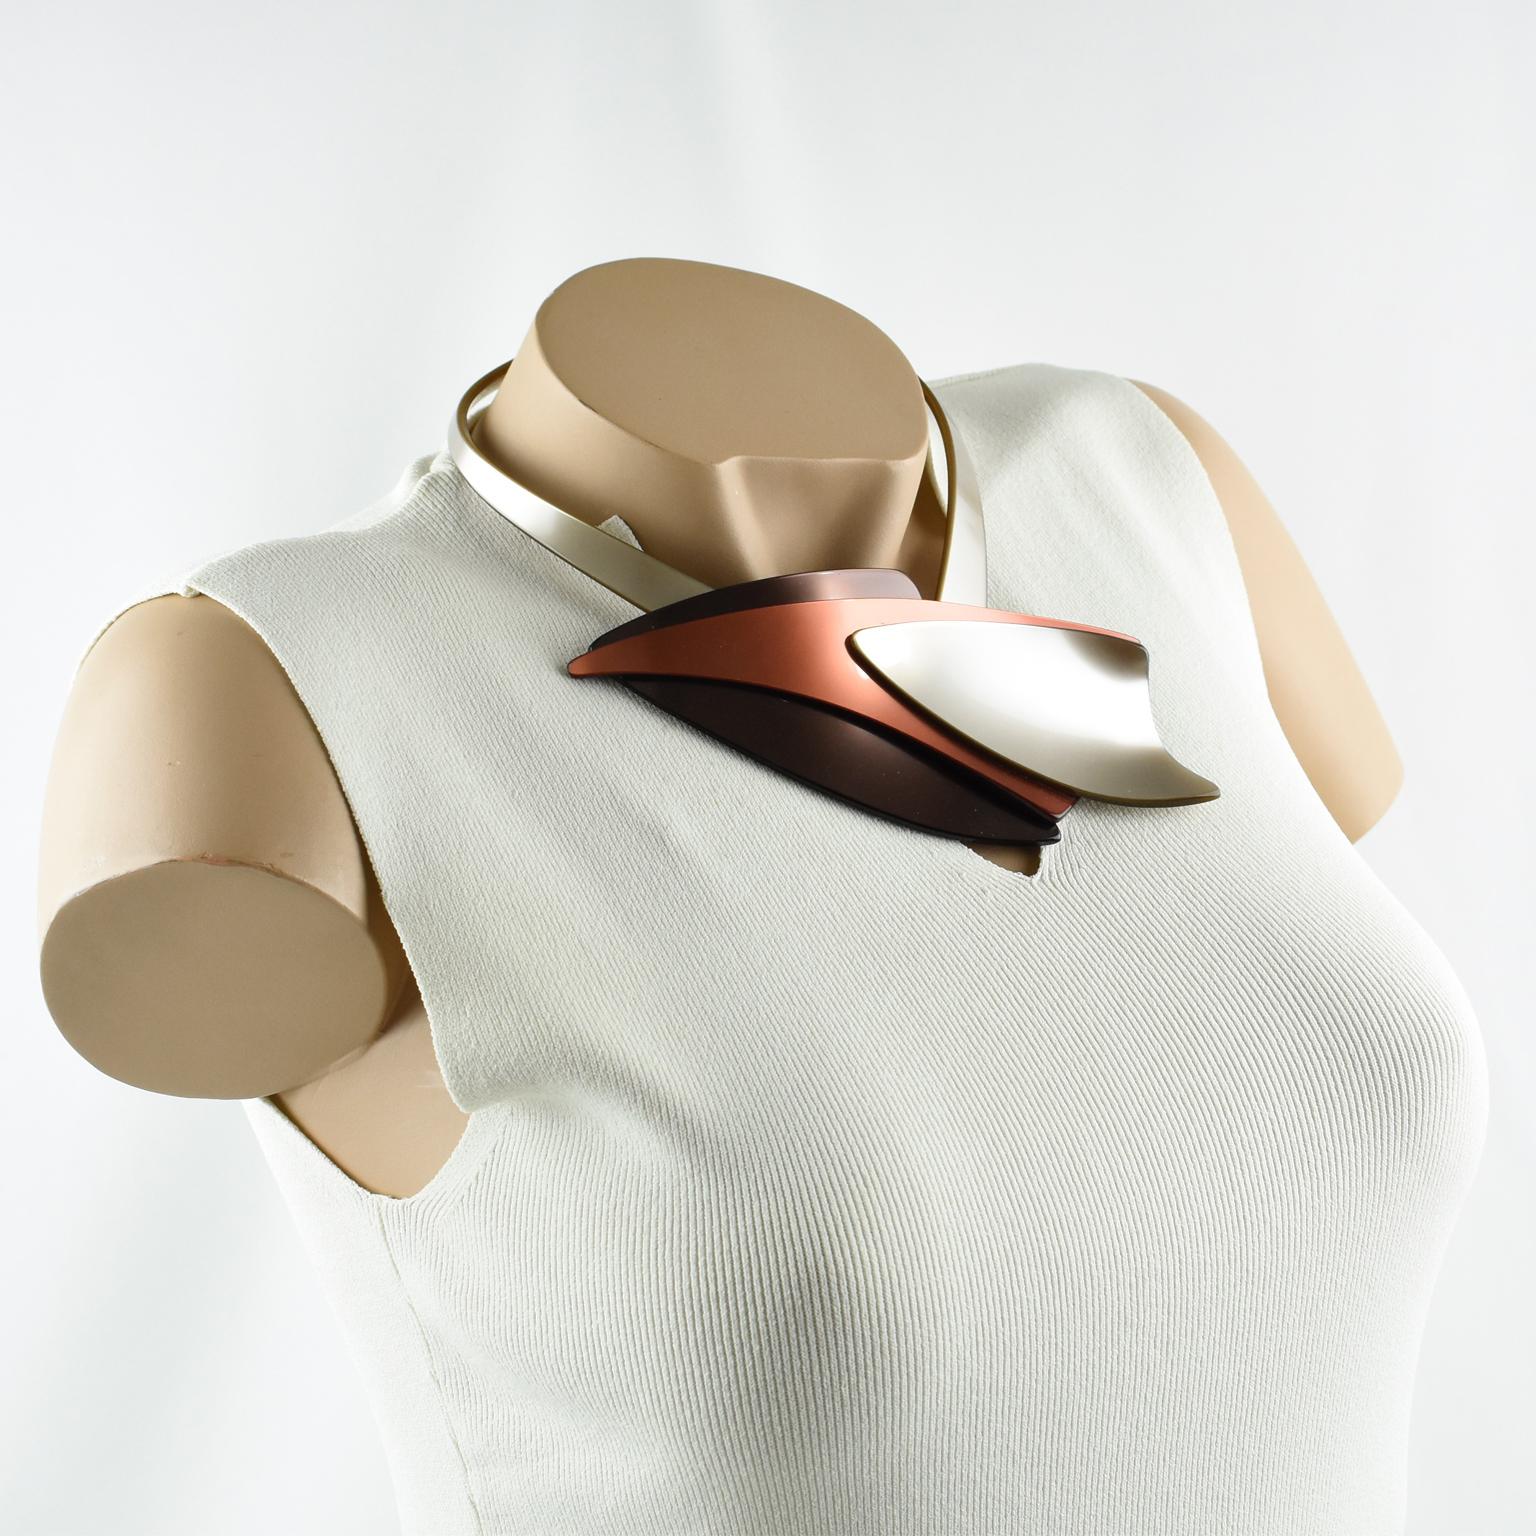 Diese atemberaubende, futuristische Halskette wurde in den 1980er Jahren von Temps Fixes, einem französischen Studio mit Sitz in Paris, entworfen. Das Stück zeichnet sich durch ein Space-Age-Design mit einem starren Lucite-Band um den Hals in